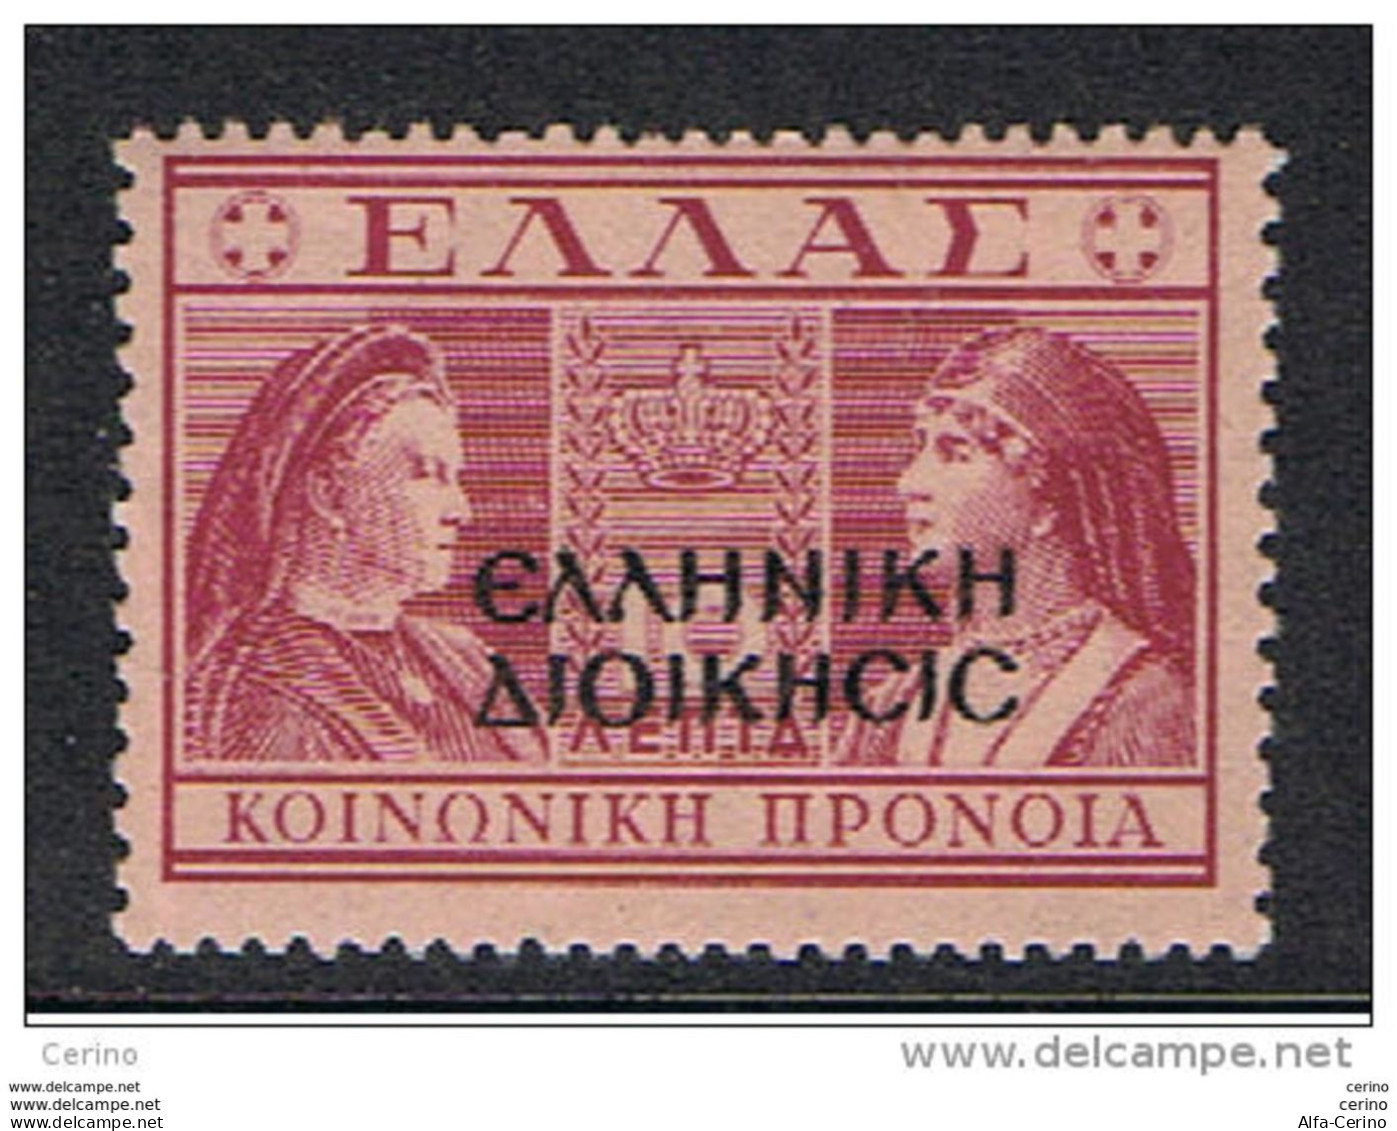 OCCUP. GRECA  ALBANIA:  1945  SOPRASTAMPATO  -  £. 10  ROSA  LILLA  N. -  DECALCO  SOPRASTAMPA  -  SASS. 18 - Occup. Greca: Albania